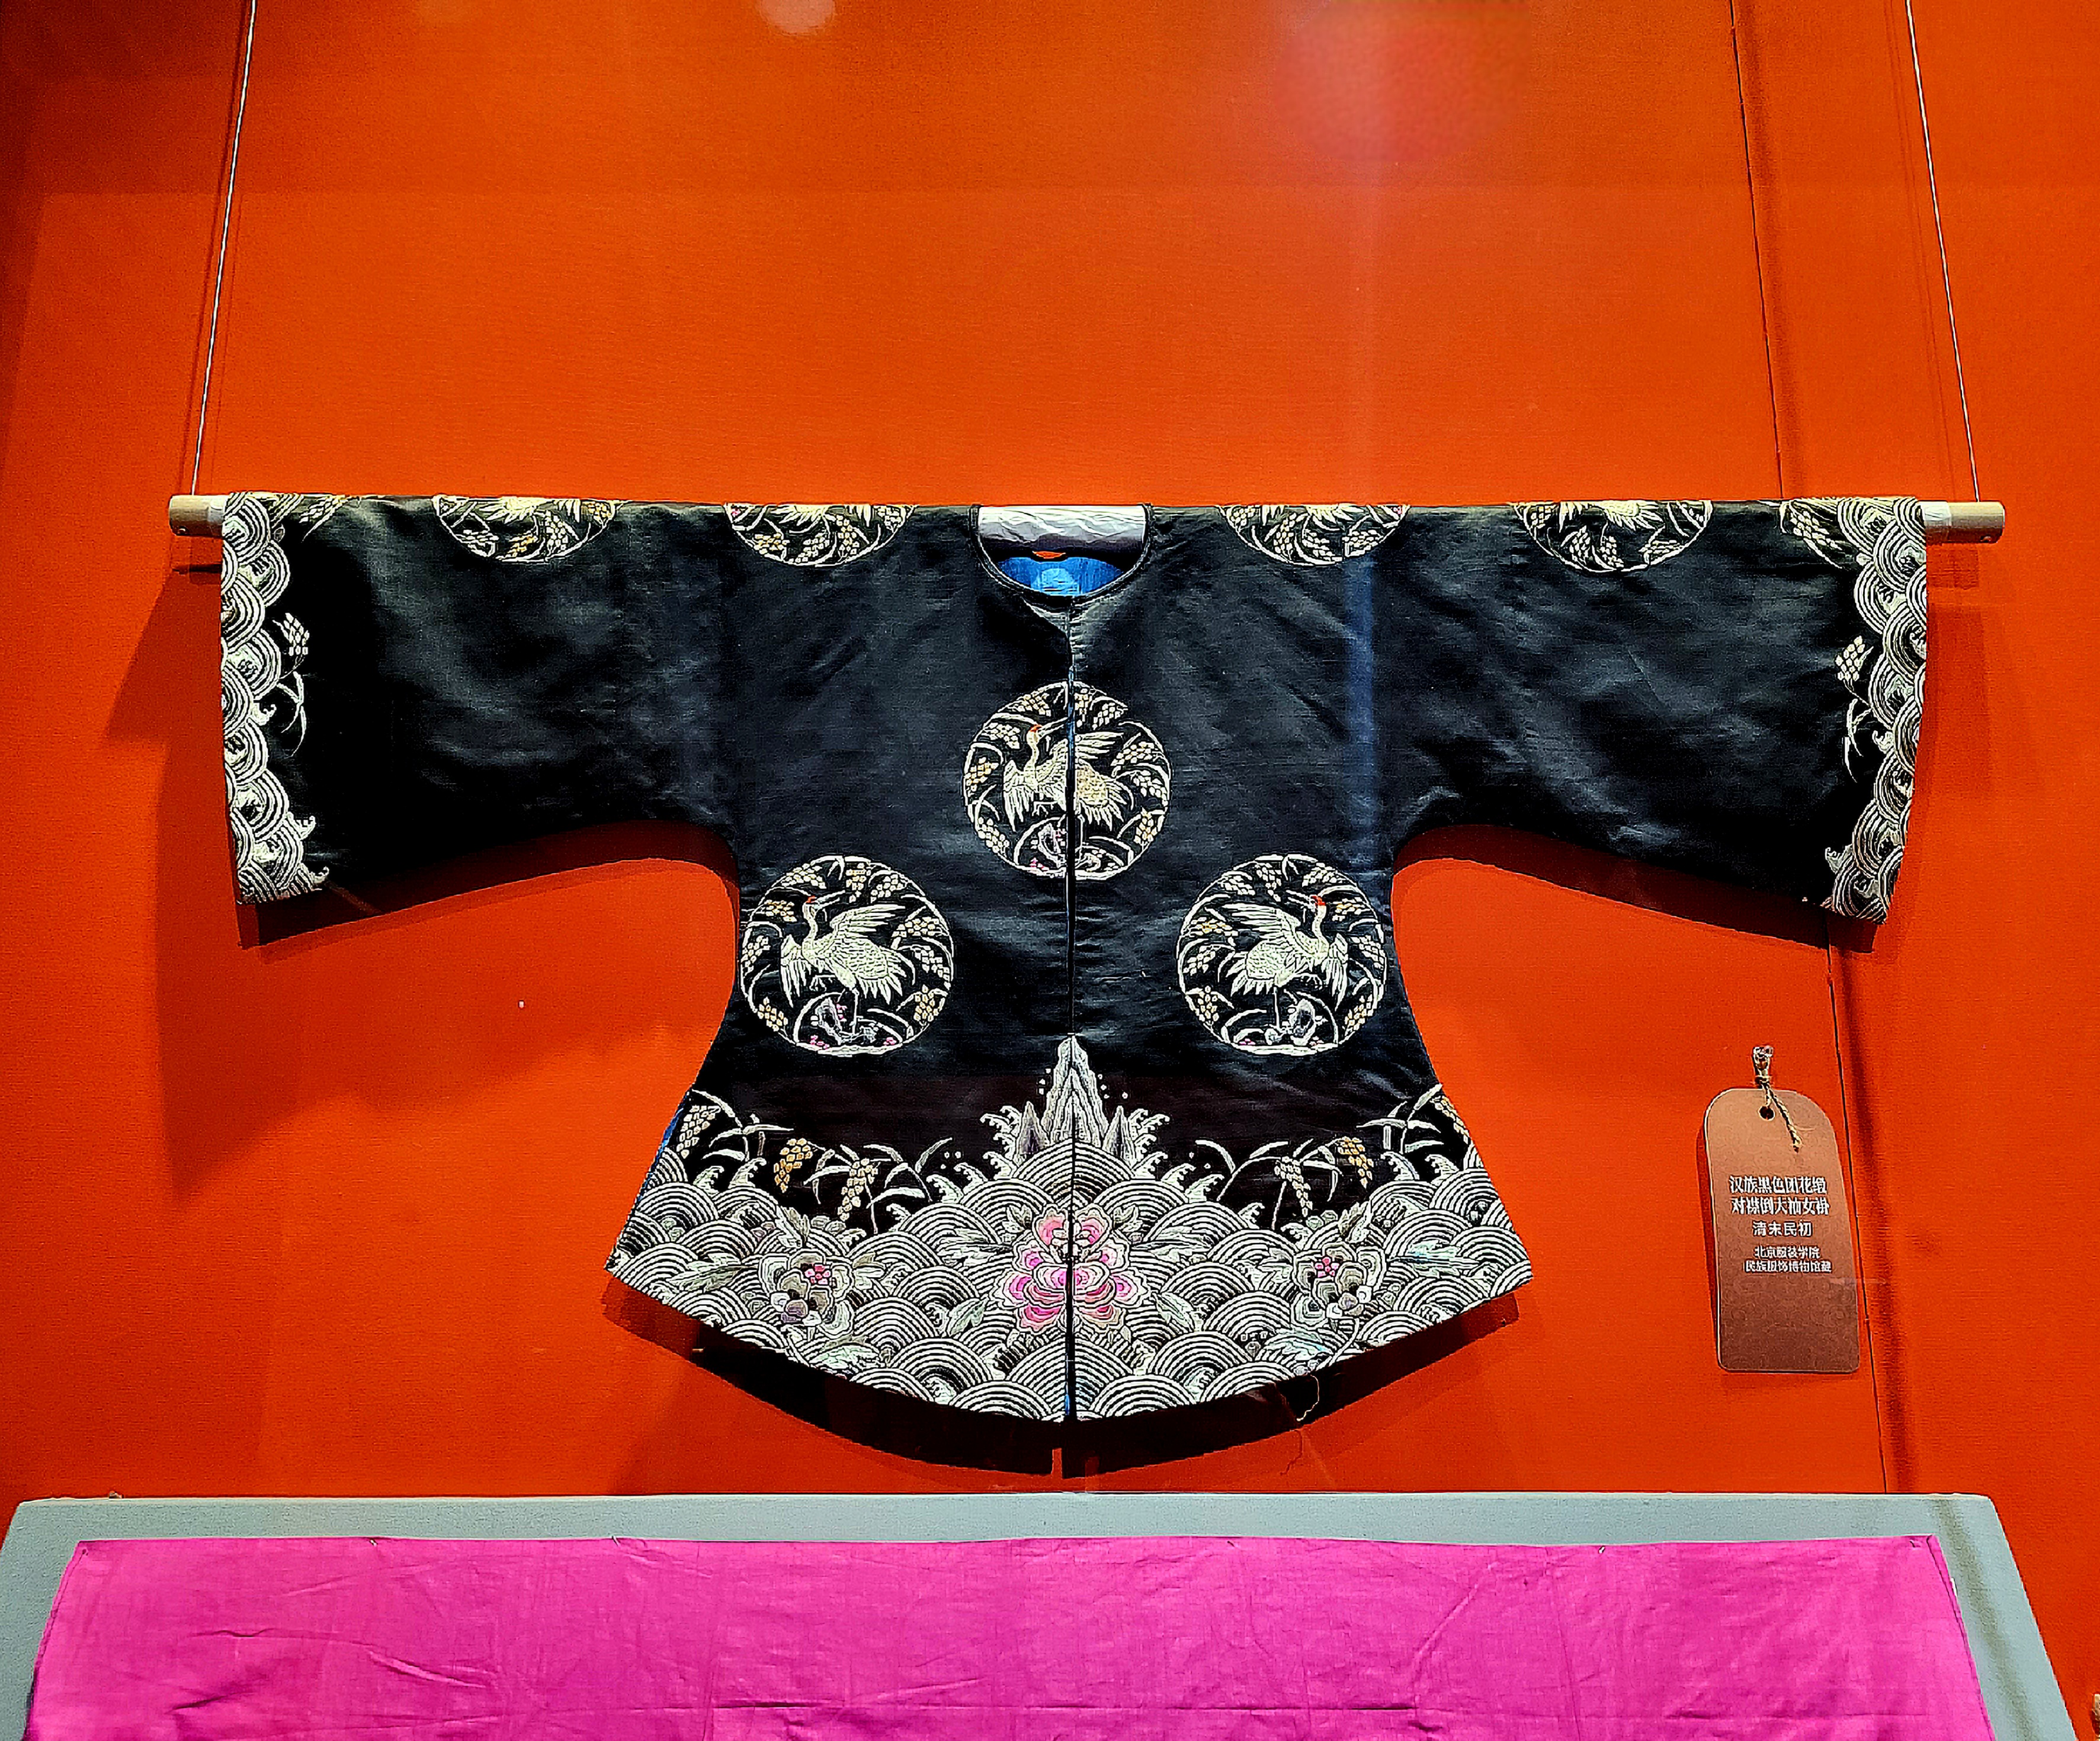 Μια φορεσιά της εθνότητας Χαν (汉族服饰：Hànzú fúshì)από την έκθεση με τις φορεσιές των εθνοτήτων της Κίνας (中国各民族的服饰:Zhōngguó gè mínzú de fúshì) από το Μουσείο Κινεζικών Κήπων και Τοπίων (Φωτογραφία Εύα Παπαζή)